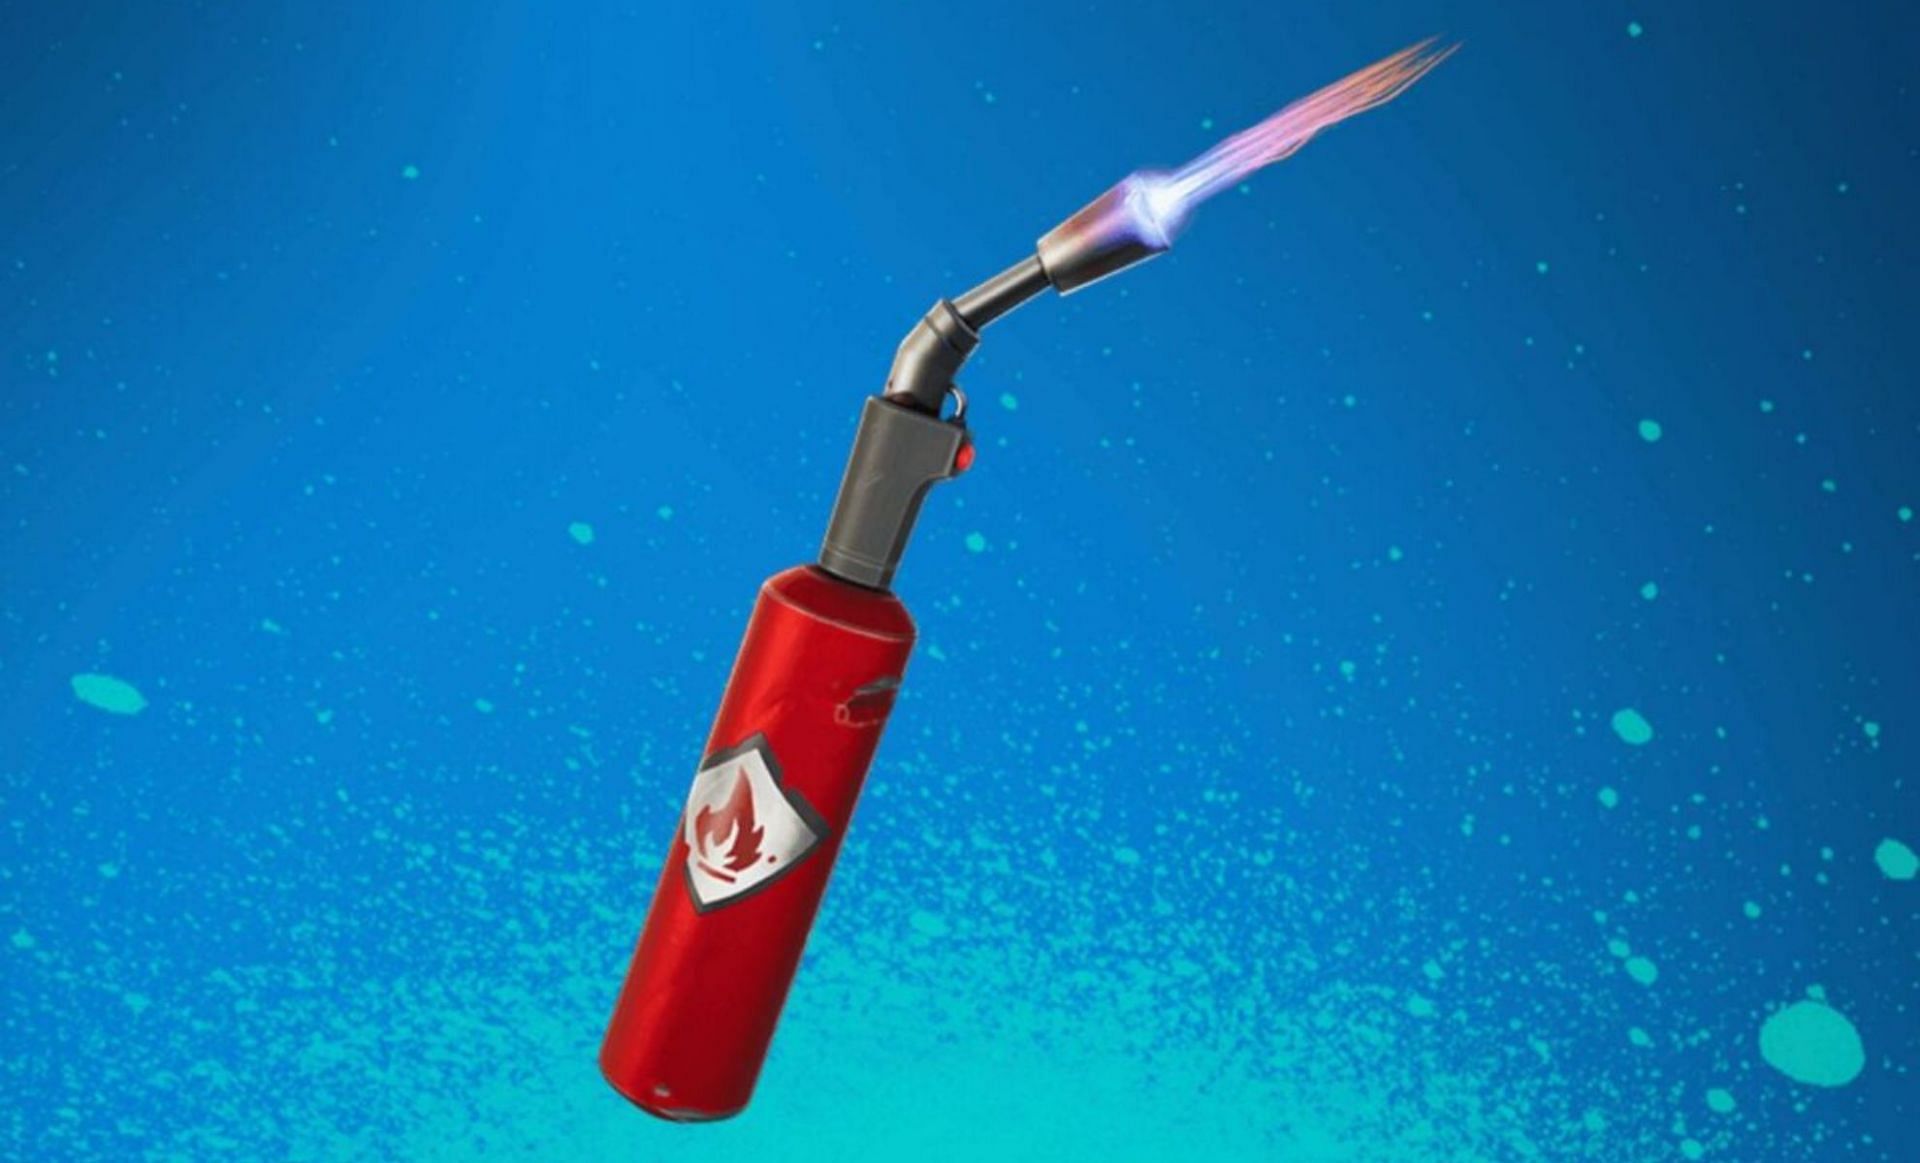 Repair torch (Image via Epic Games)